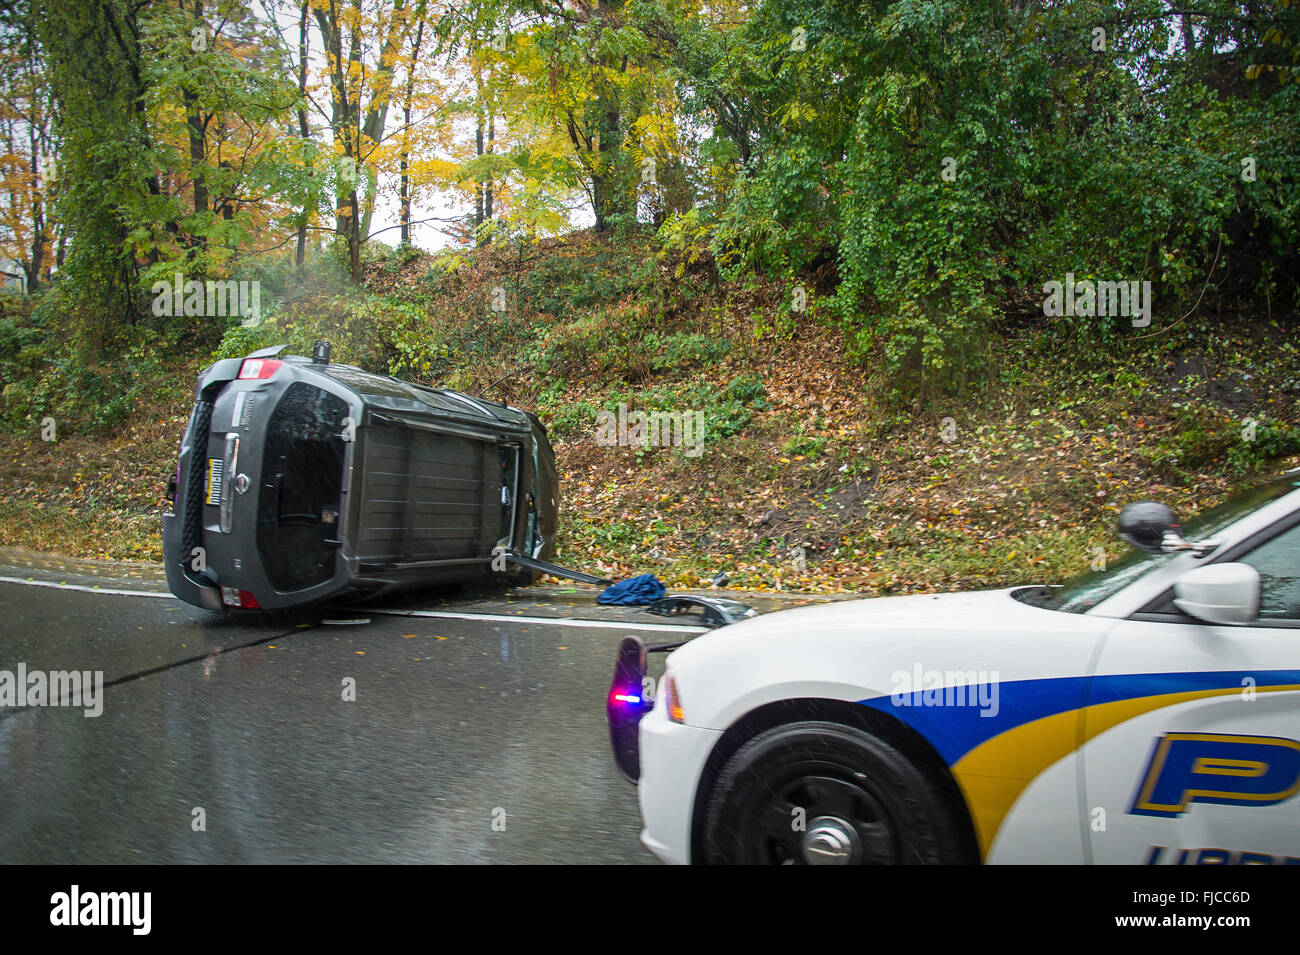 Volcado el automóvil con el coche de la policía en la escena de un accidente, Filadelfia, EE.UU. Foto de stock